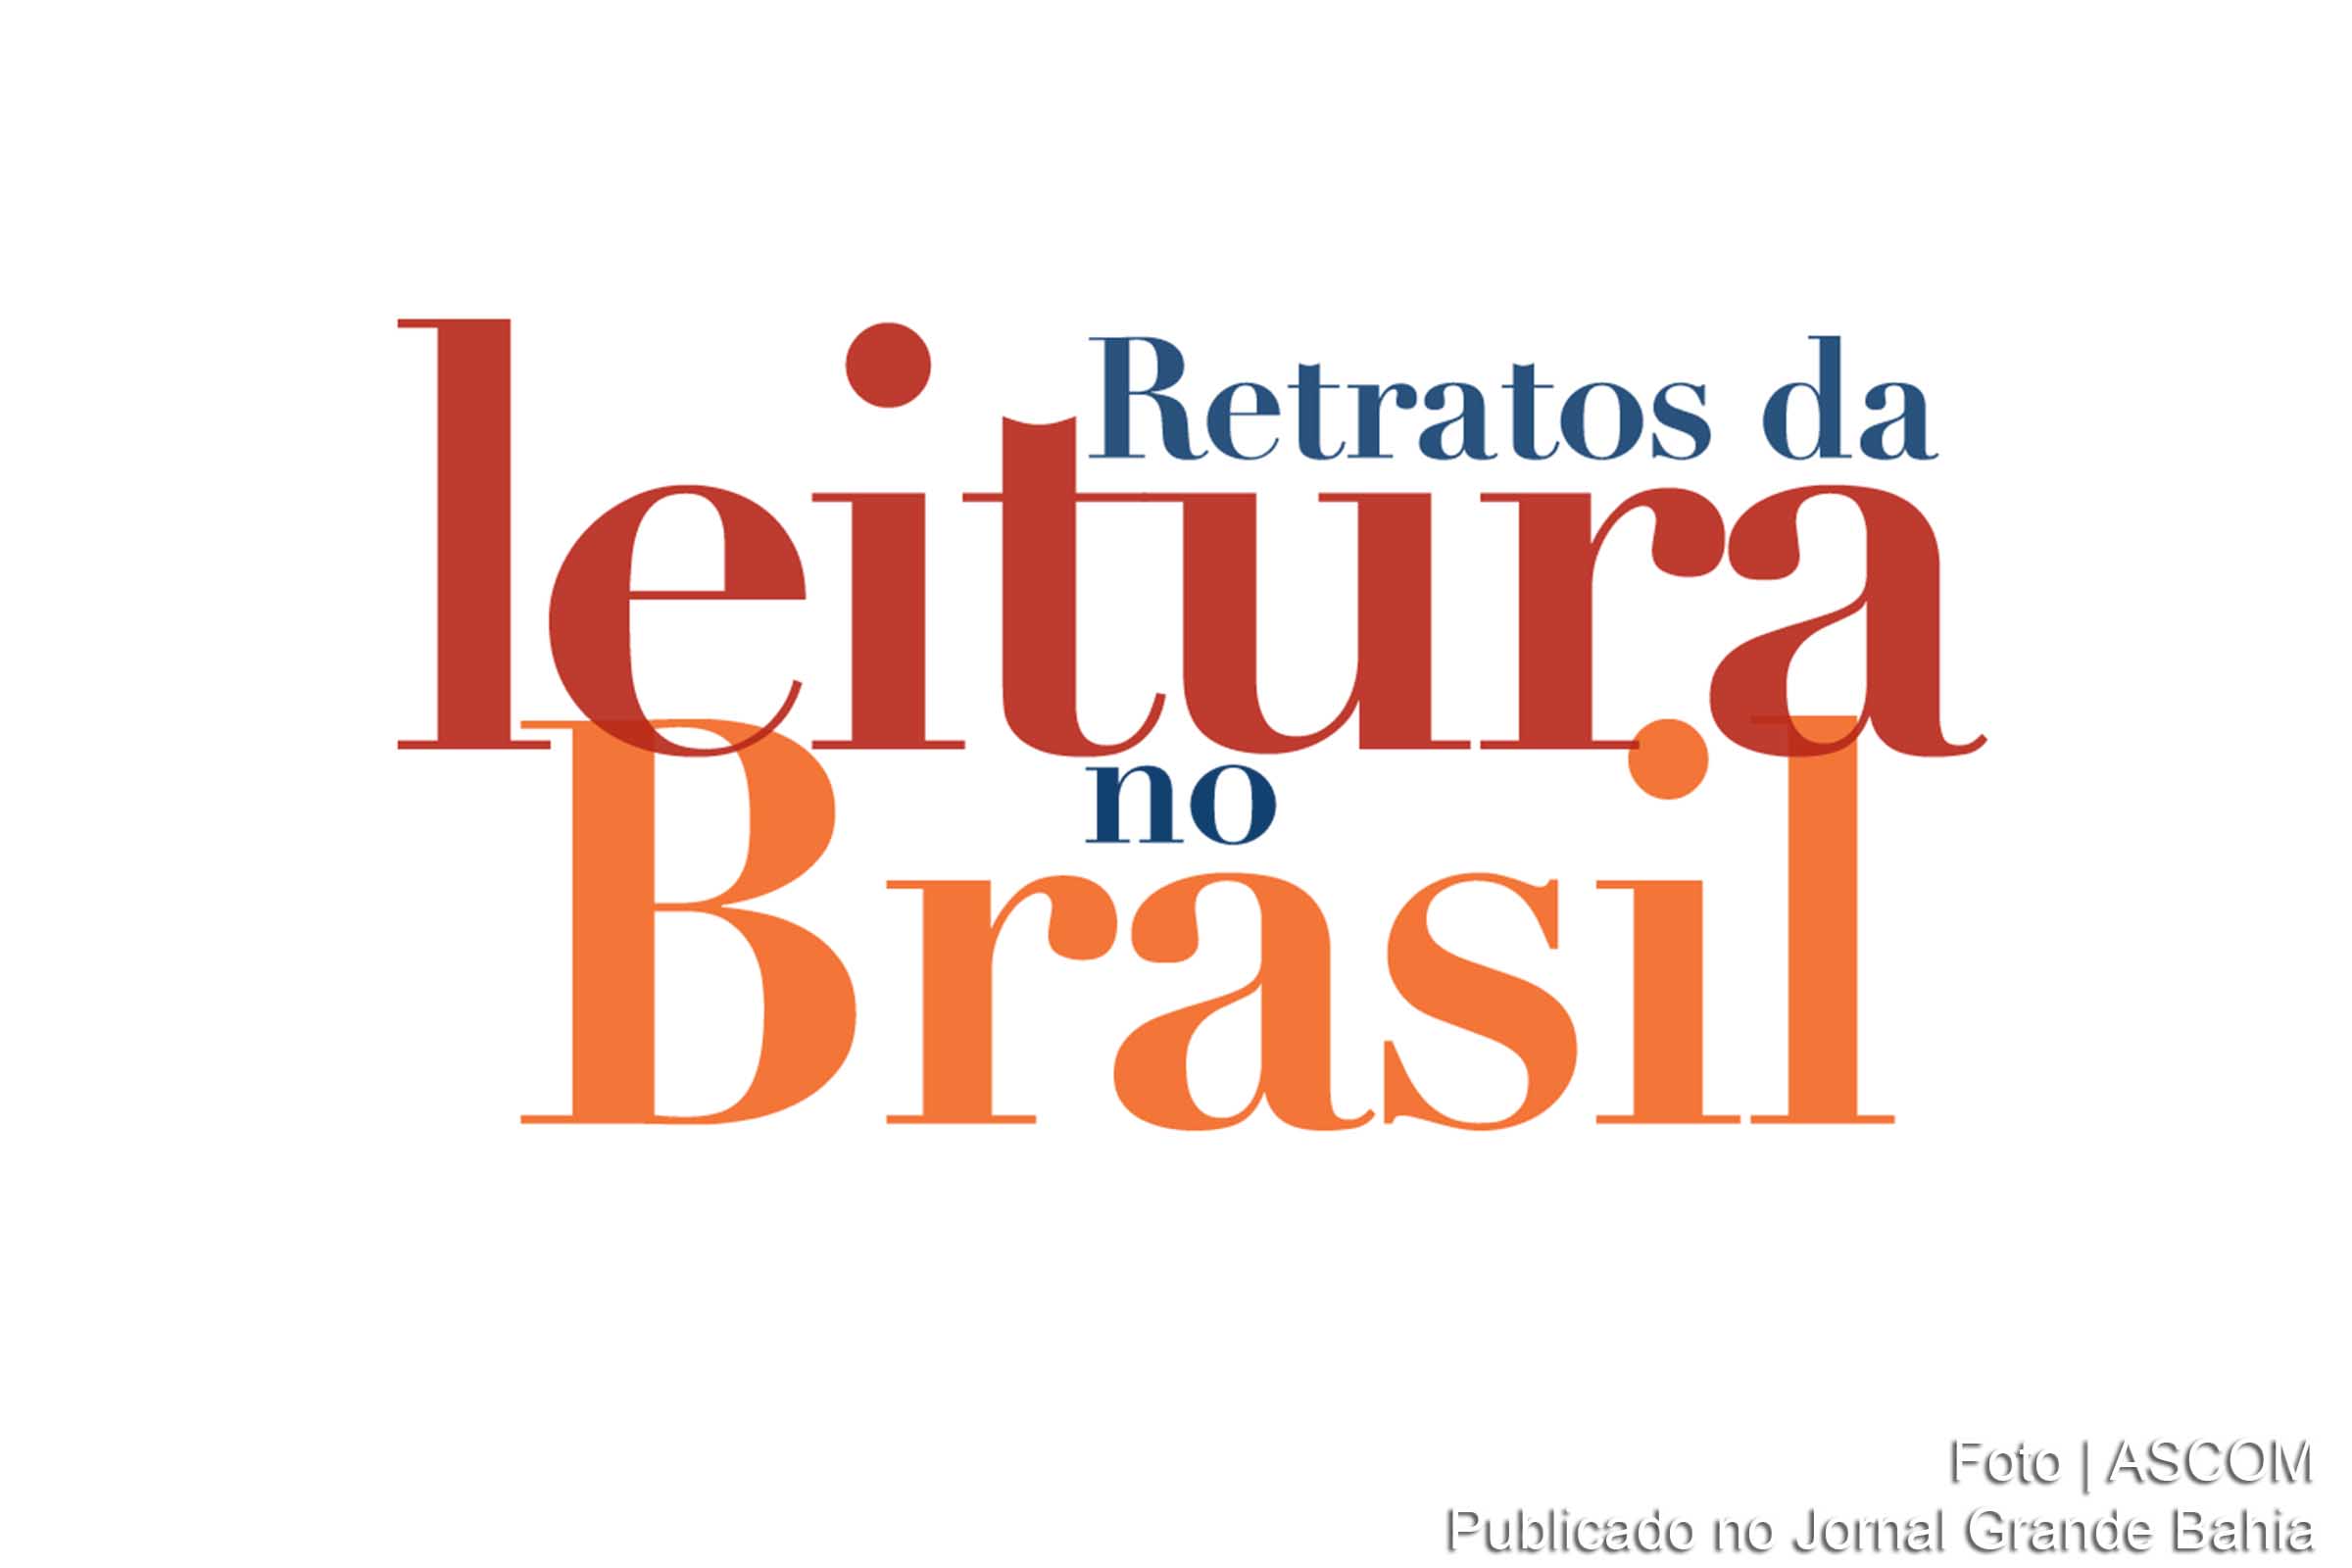 Pesquisa Retratos da Leitura no Brasil, encomendada pelo Instituto Pró-Livro (IPL) ao Ibope, teve seus resultados divulgados.